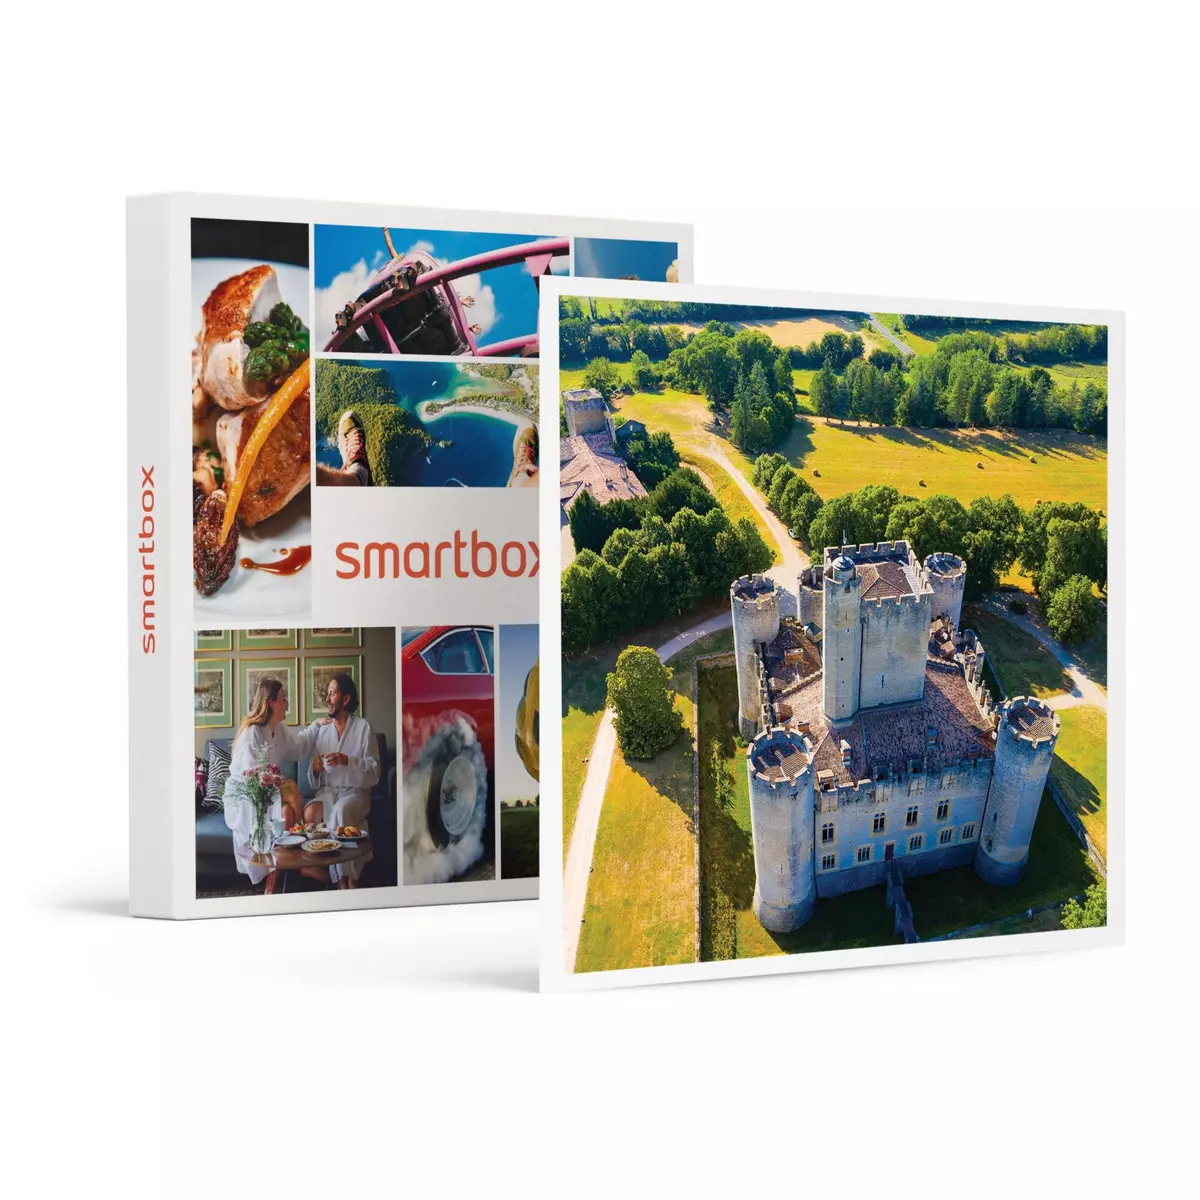 Smartbox Vol en ULM pendulaire ou paramoteur d'1h près de Bordeaux - Coffret Cadeau Sport & Aventure